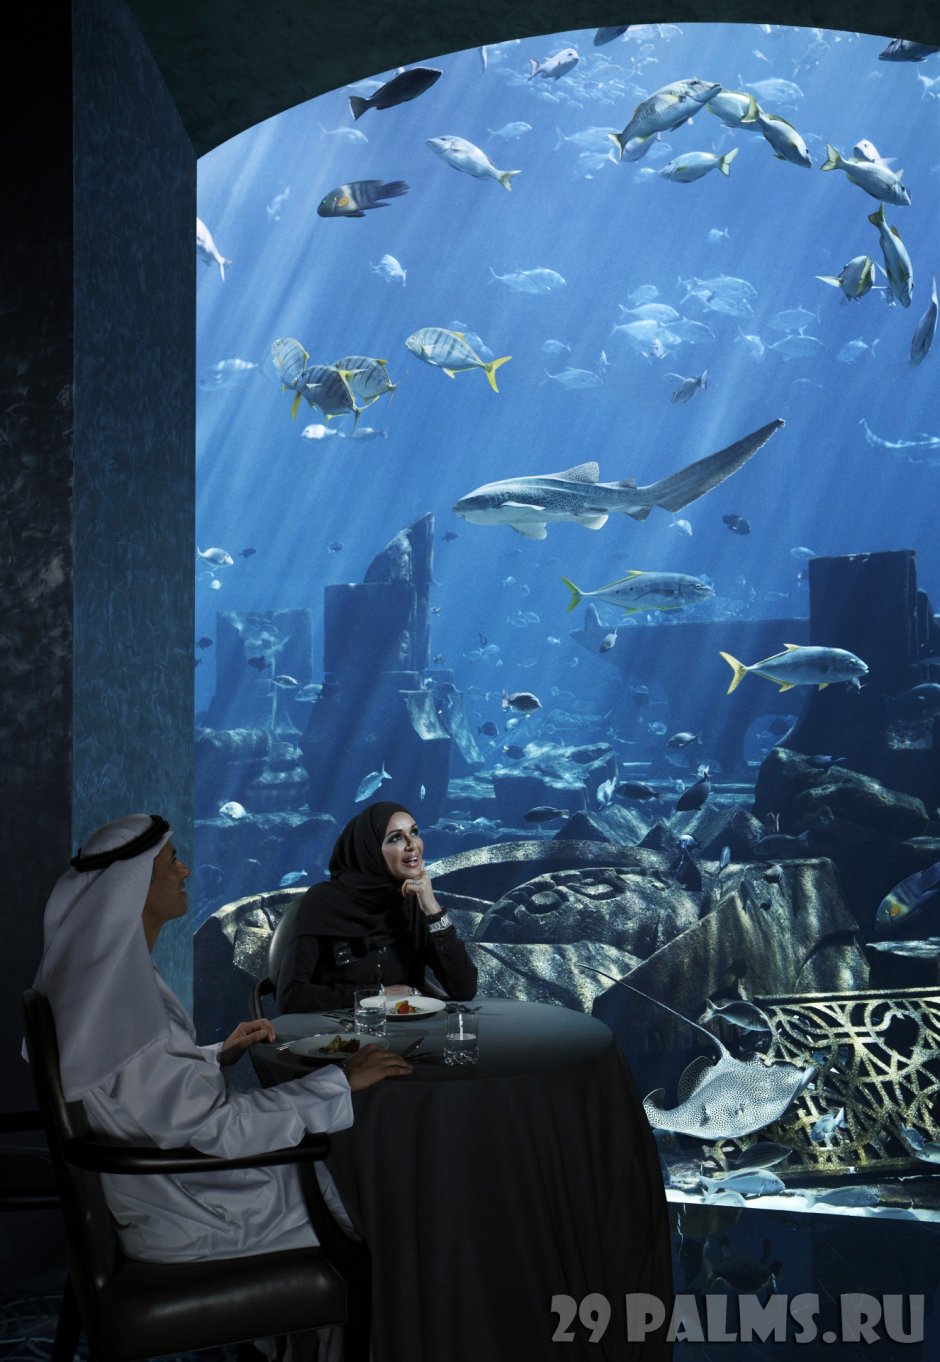 Atlantis hotel dubai underwater rooms